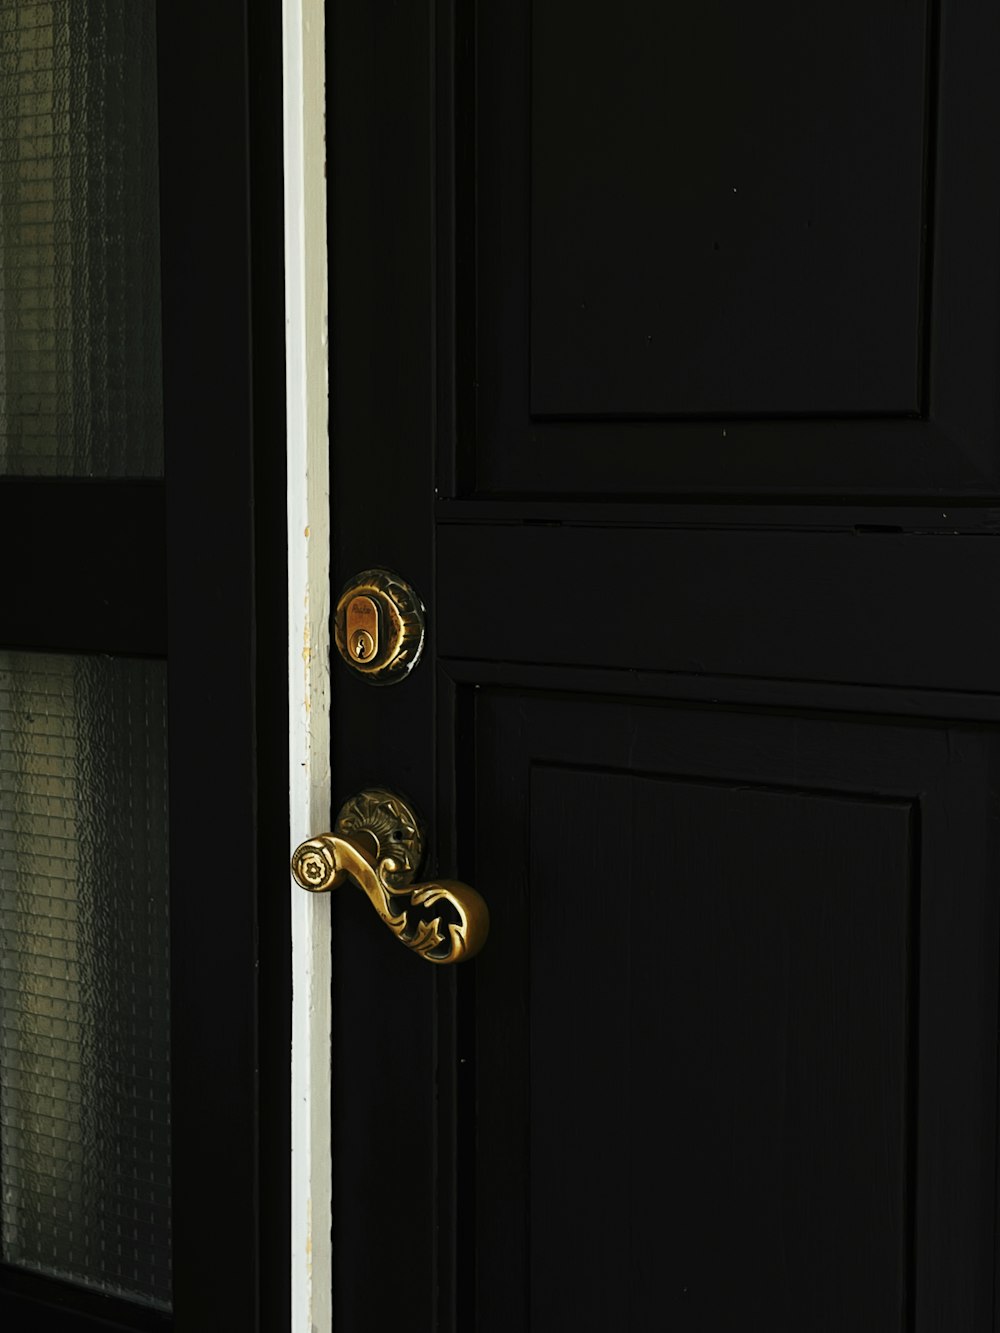 gold door knob on black wooden door